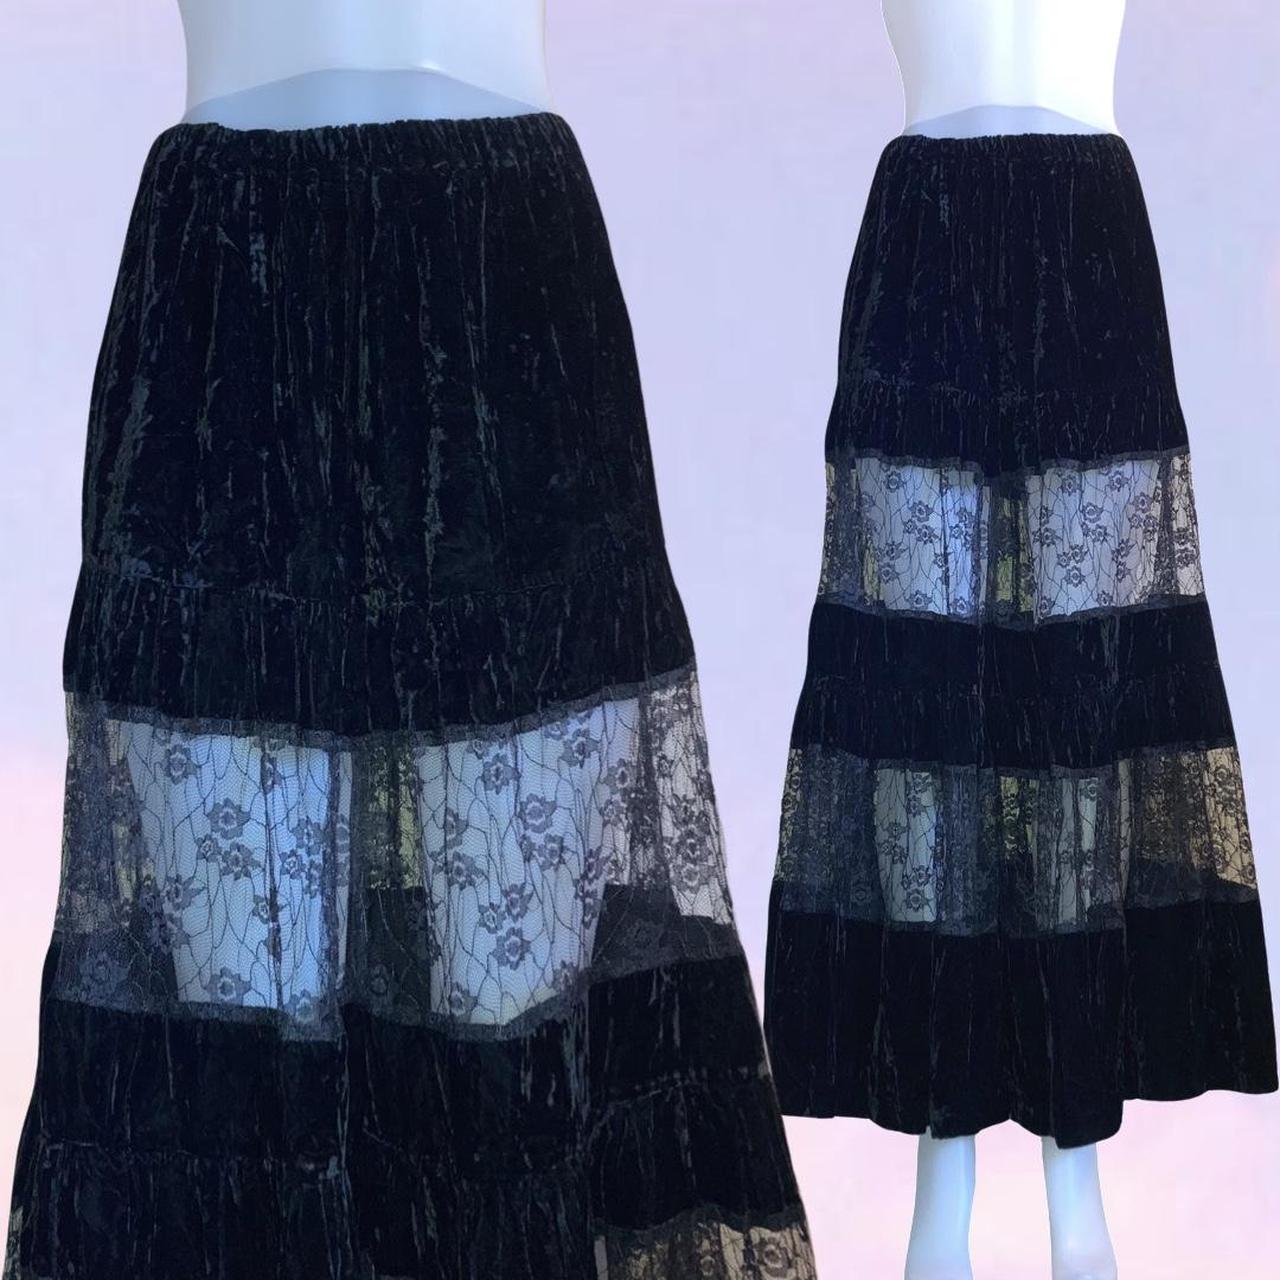 Vintage 90s y2k maxi skirt. Velvet with lace sheet... - Depop